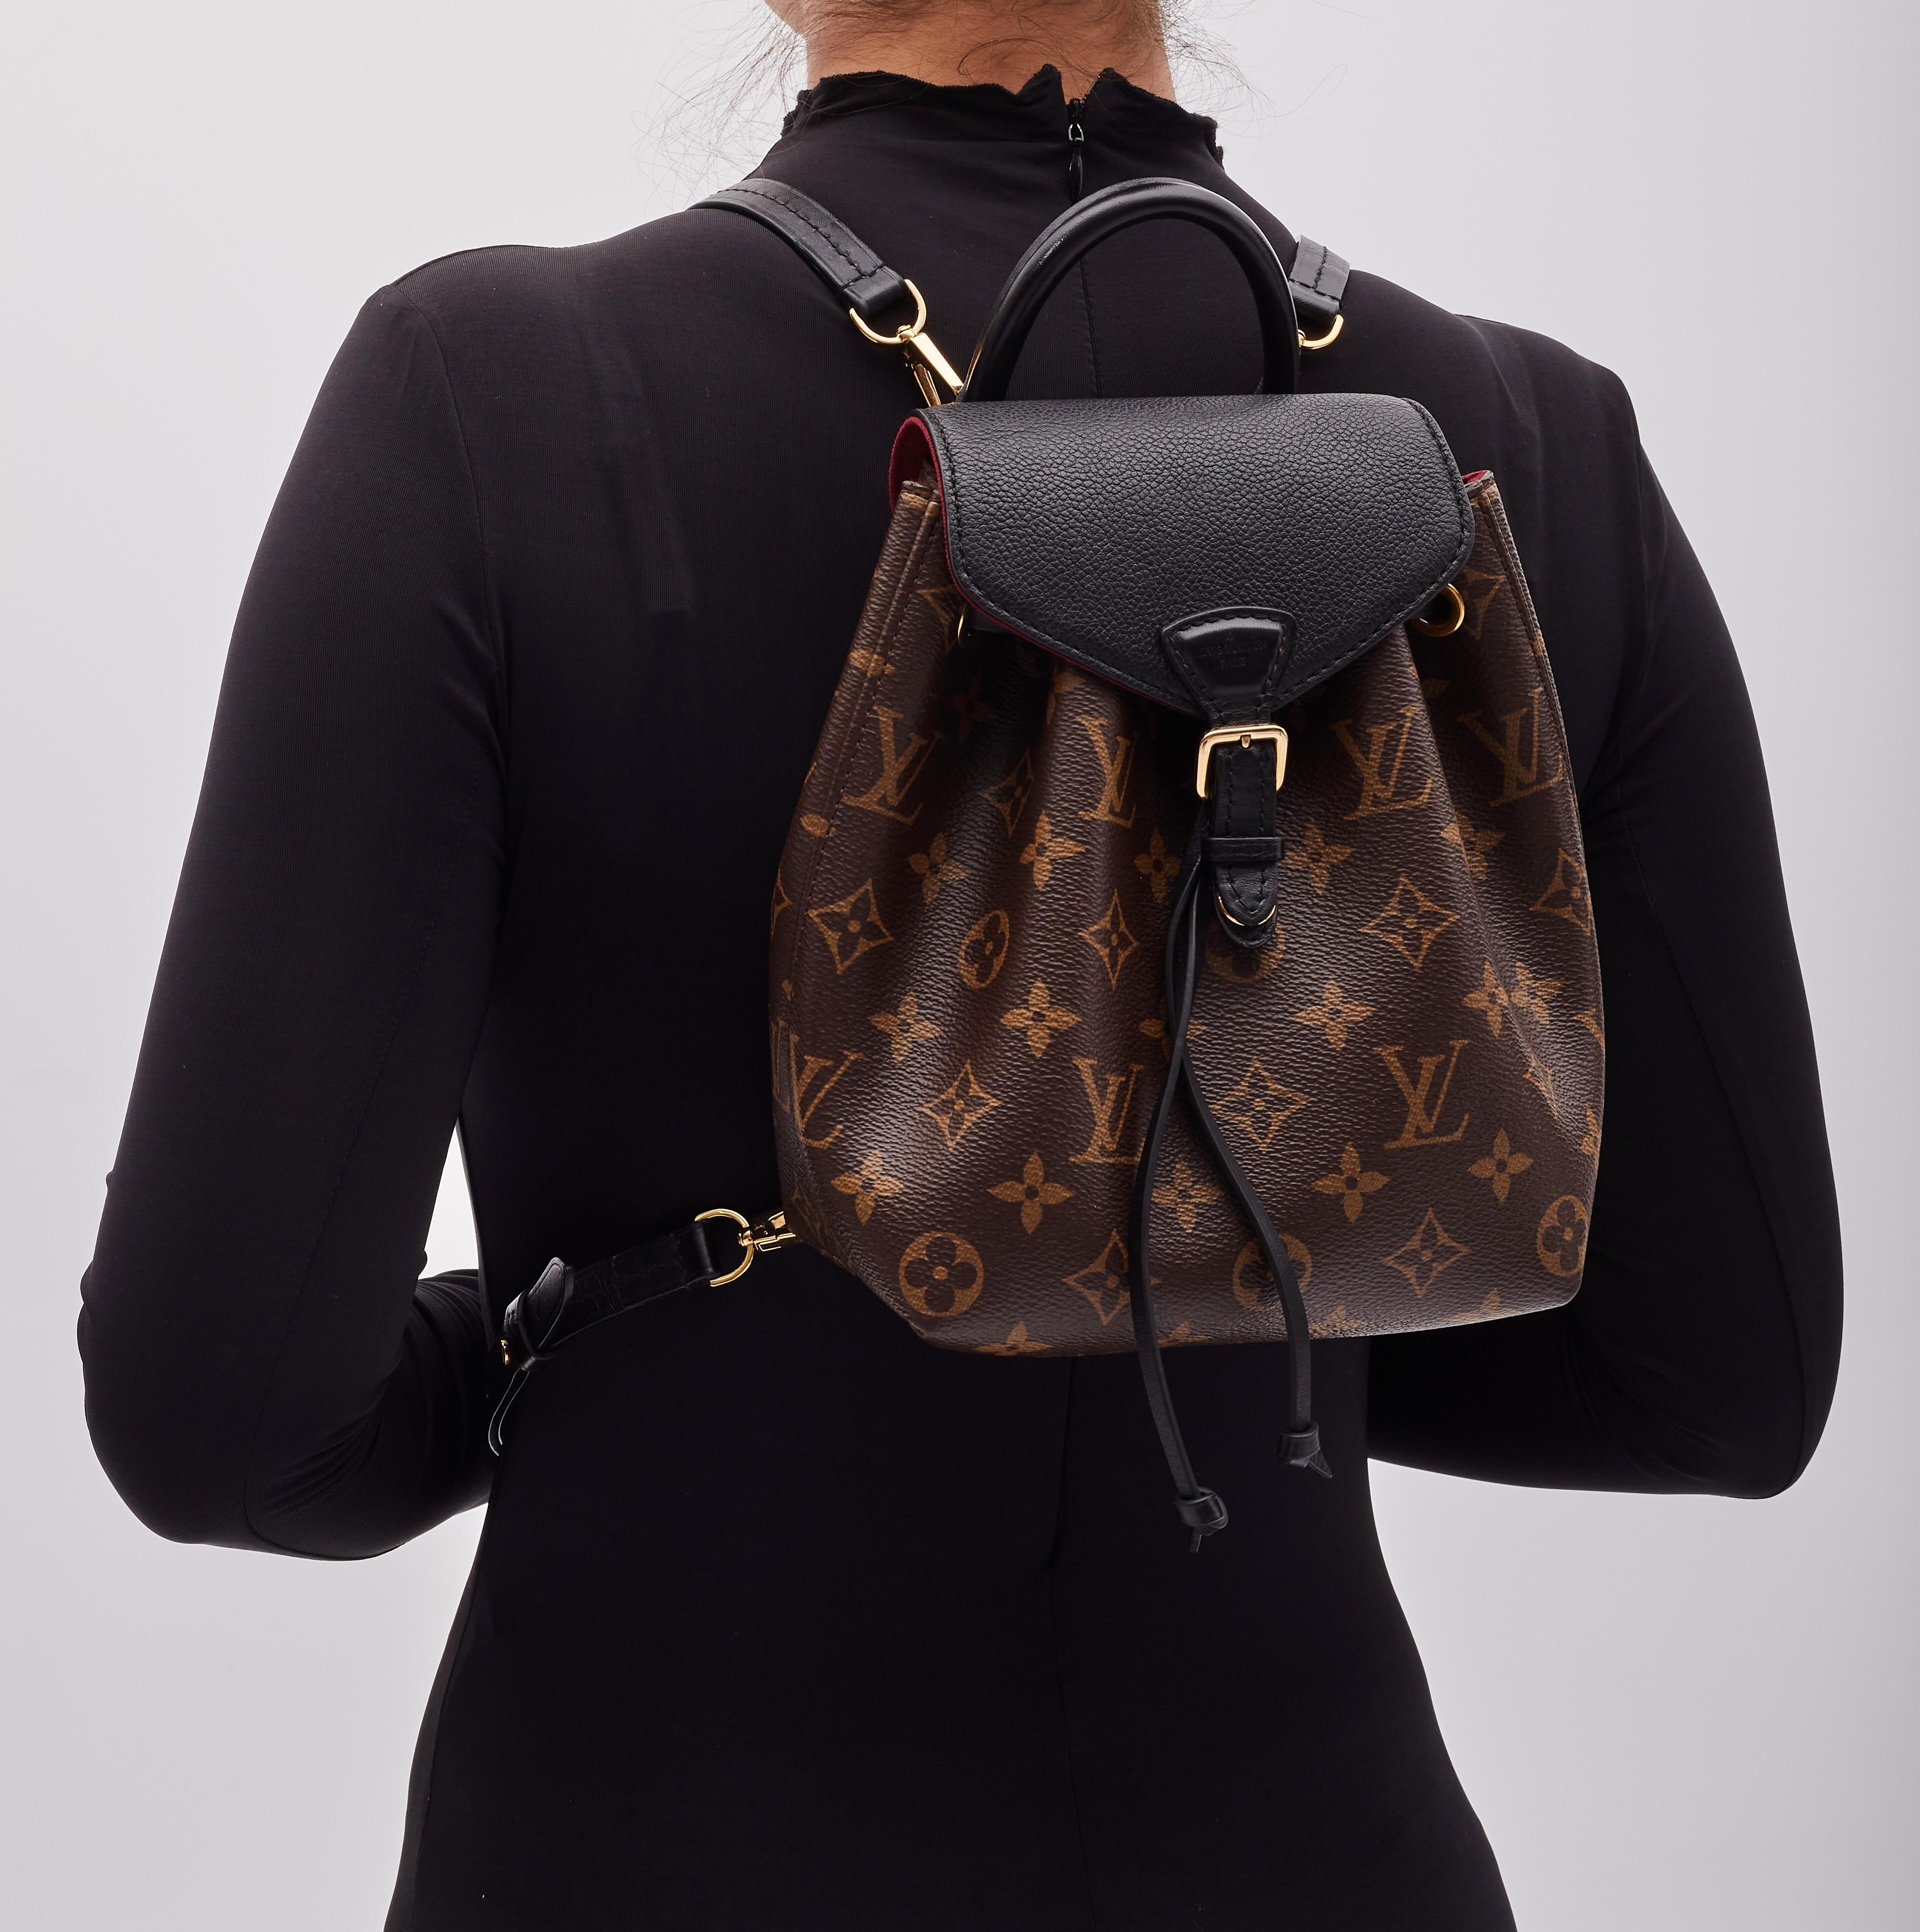 Ce sac à dos élégant est réalisé en monogramme classique Louis Vuitton avec des détails et des finitions en cuir noir. Le sac est doté de bretelles réglables, d'une quincaillerie en laiton poli et s'ouvre par une boucle de ceinture sur un intérieur